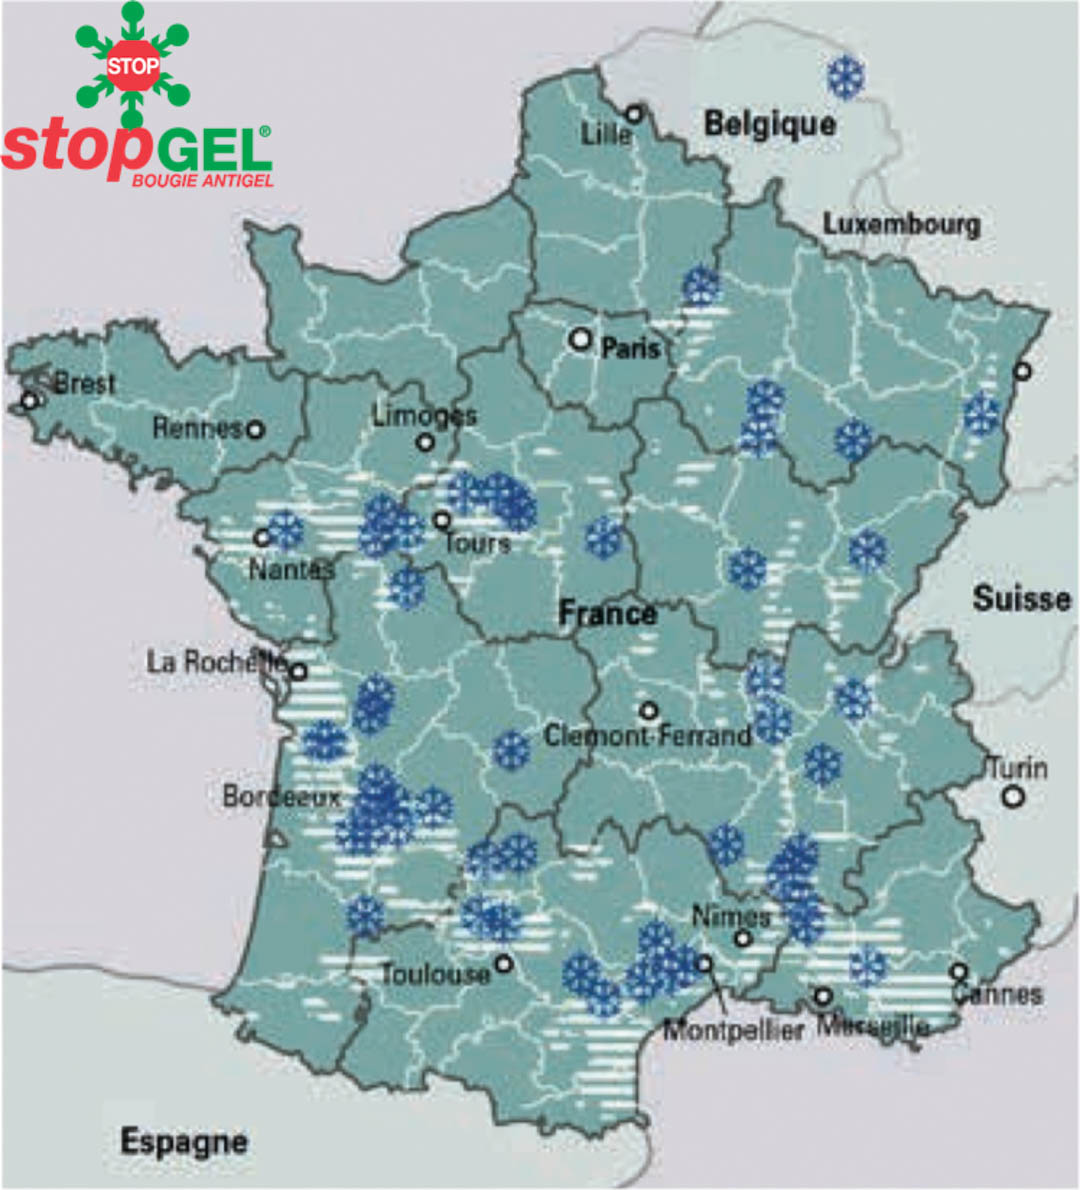 Mappa delle regioni francesi colpite dal gelo nel 2017